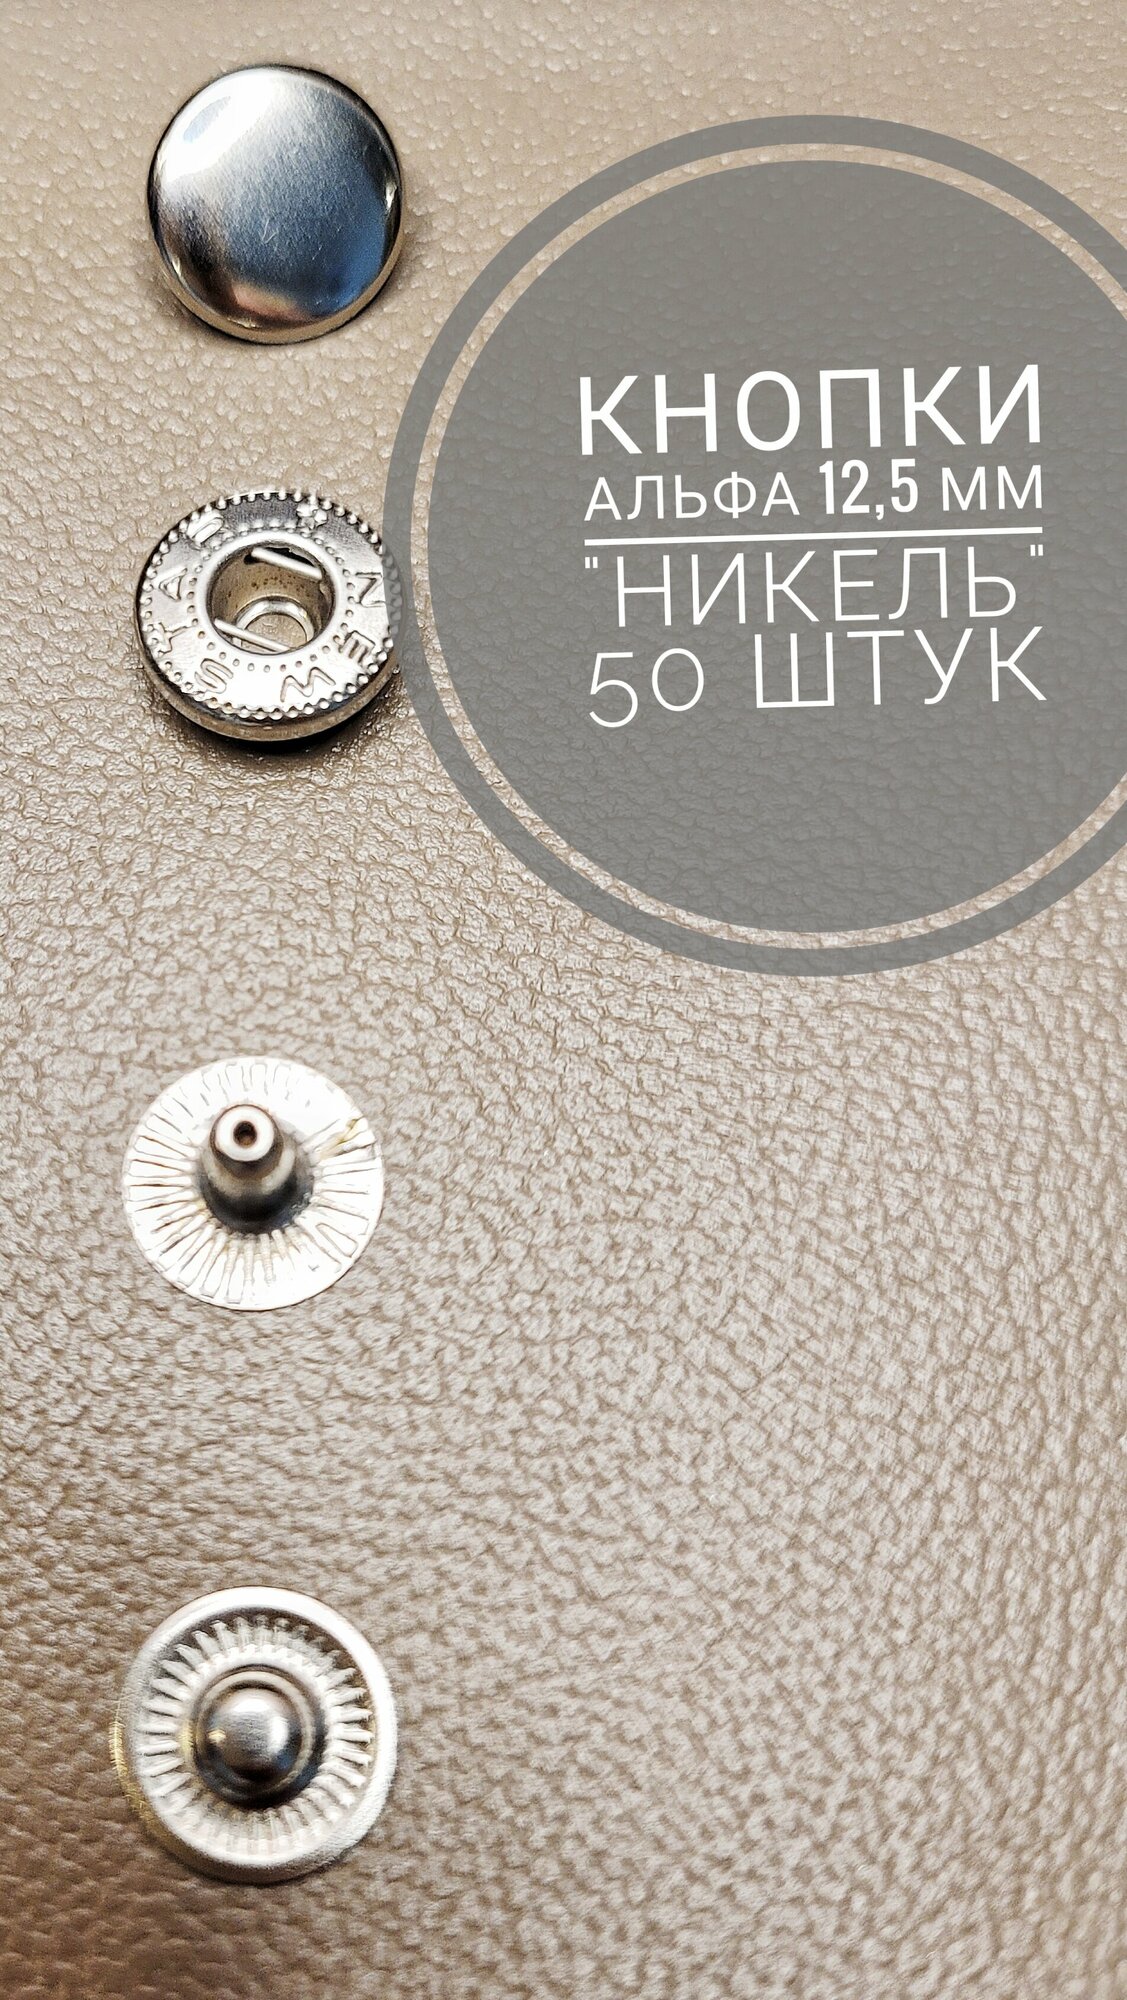 Кнопки Альфа 125 мм 50 штук (комплектов) никель